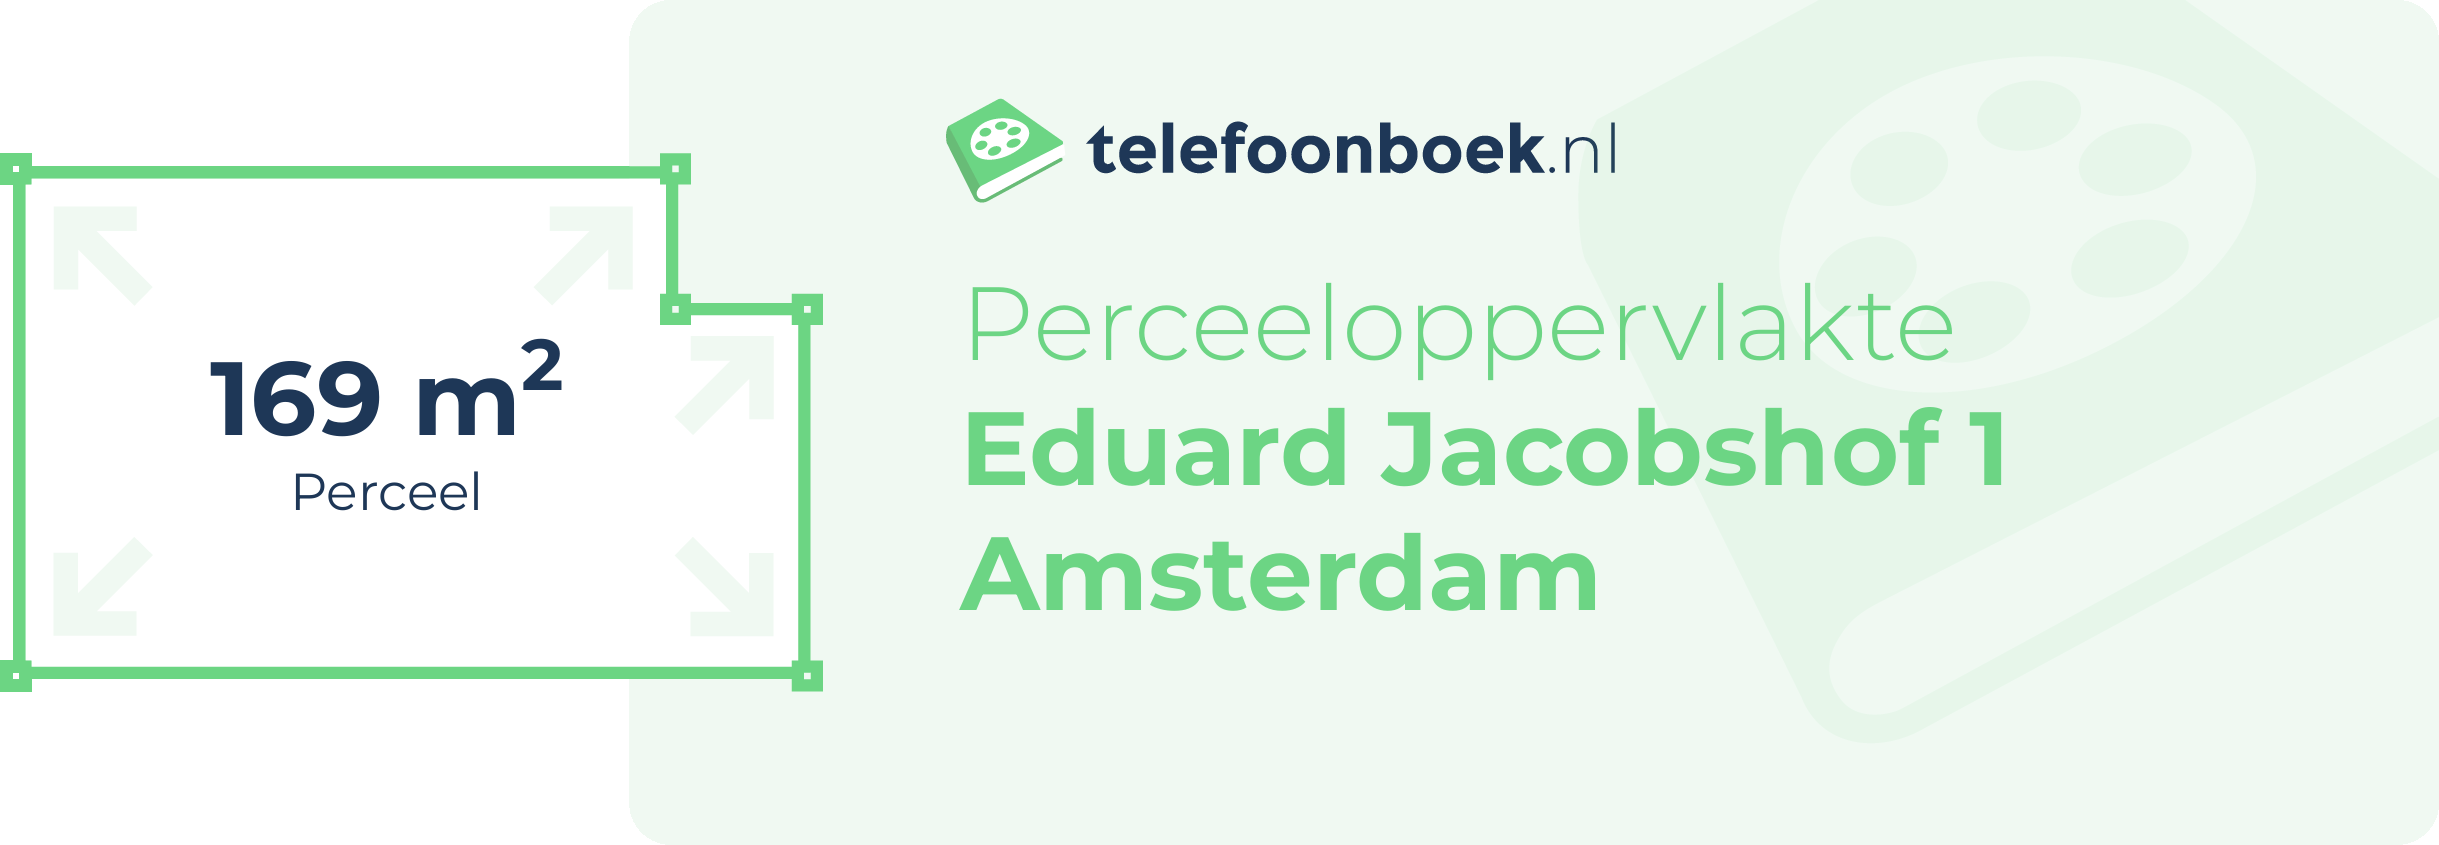 Perceeloppervlakte Eduard Jacobshof 1 Amsterdam